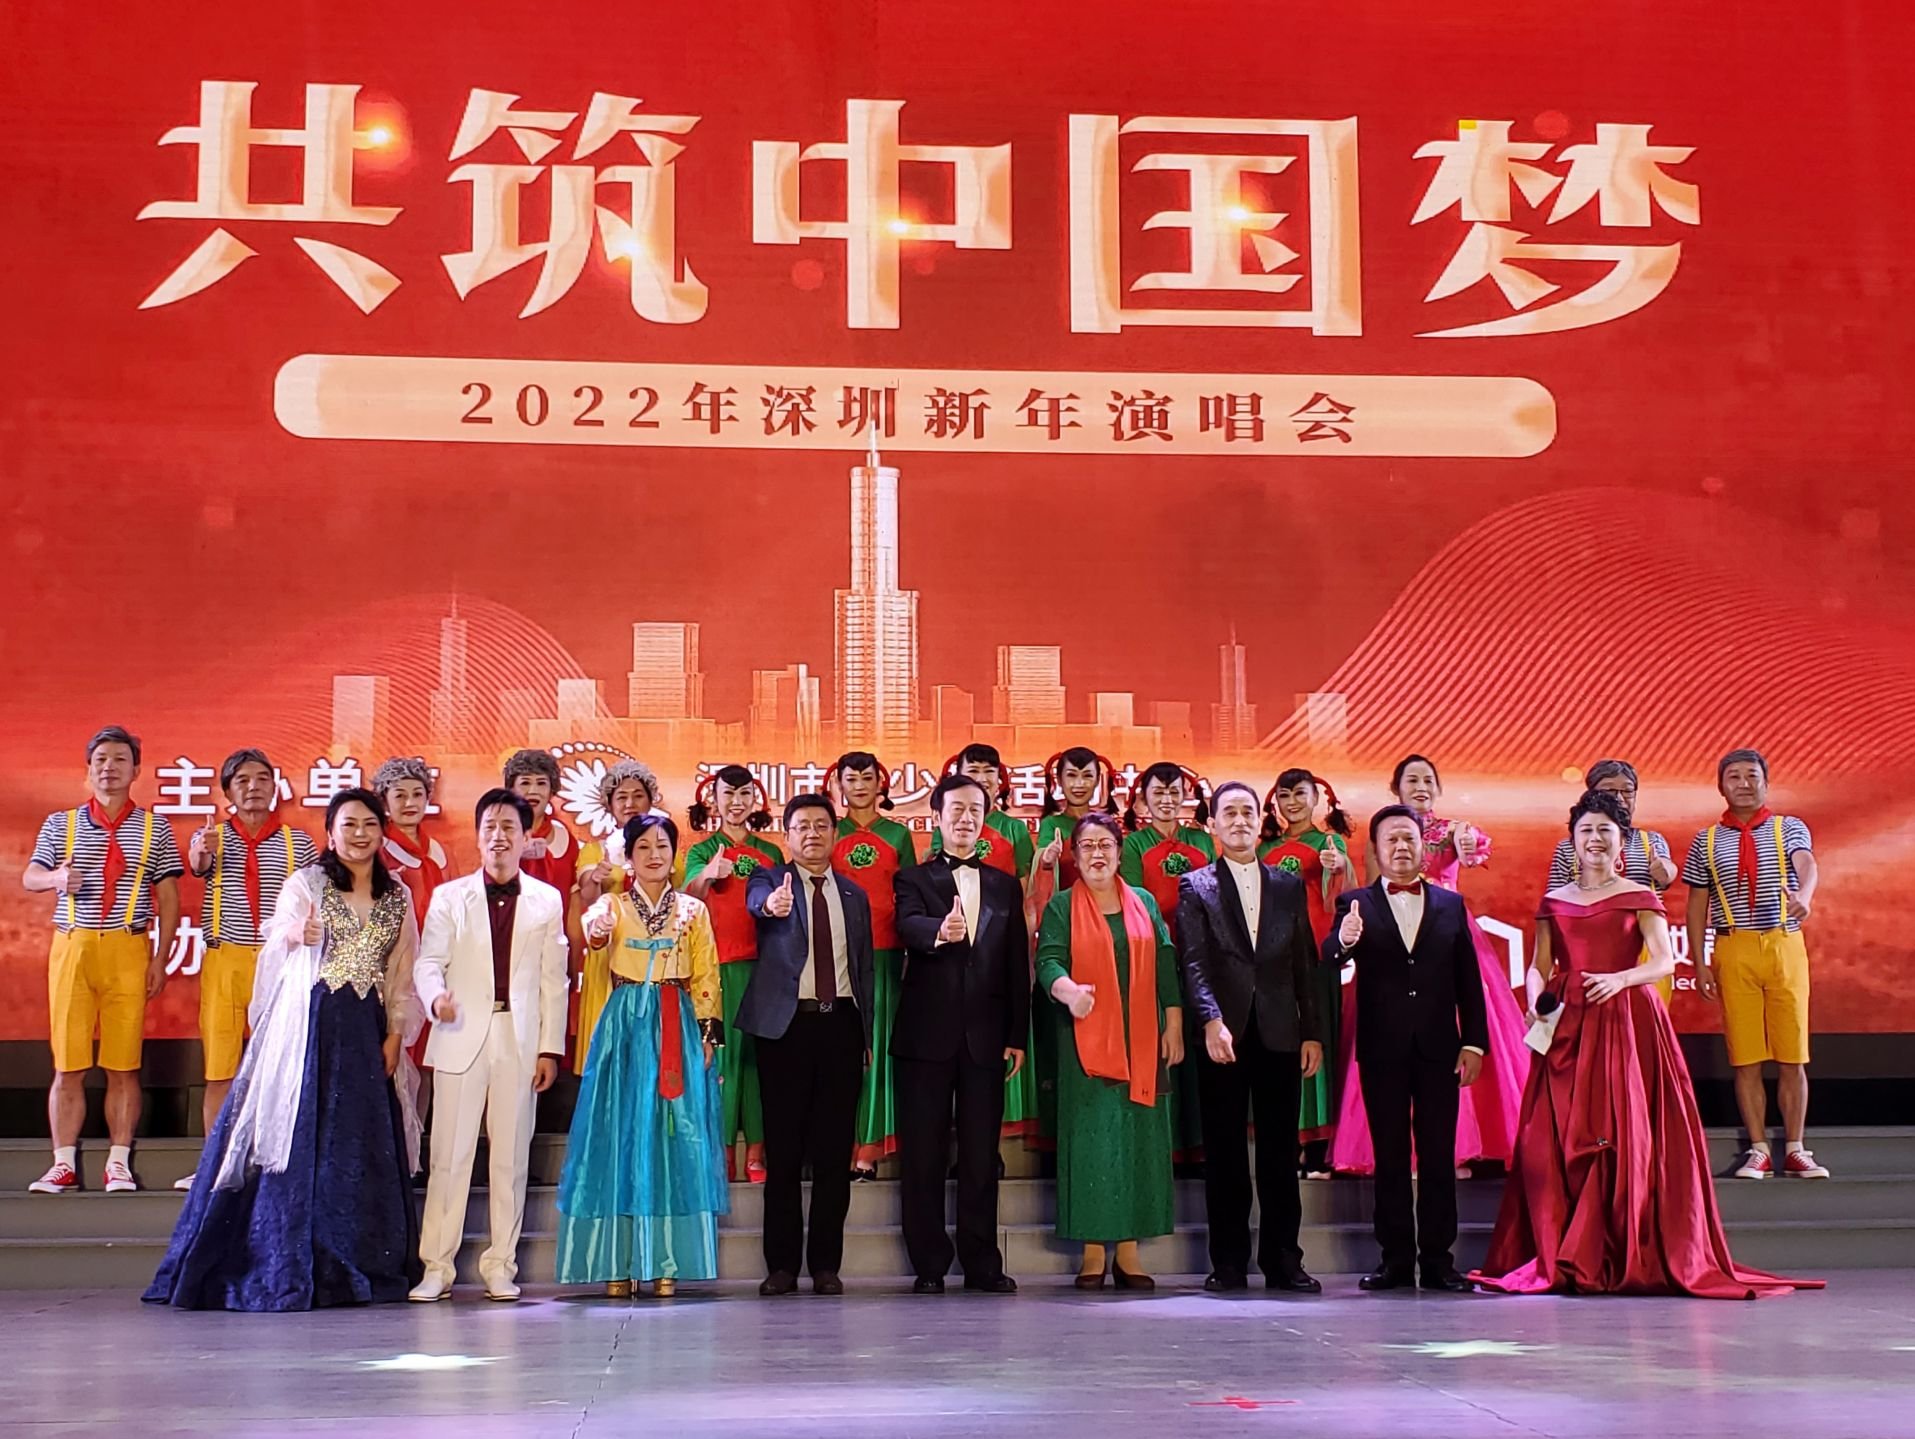 同唱大家乐舞台 共筑中国梦 ——2022年深圳新年演唱会精彩纷呈  